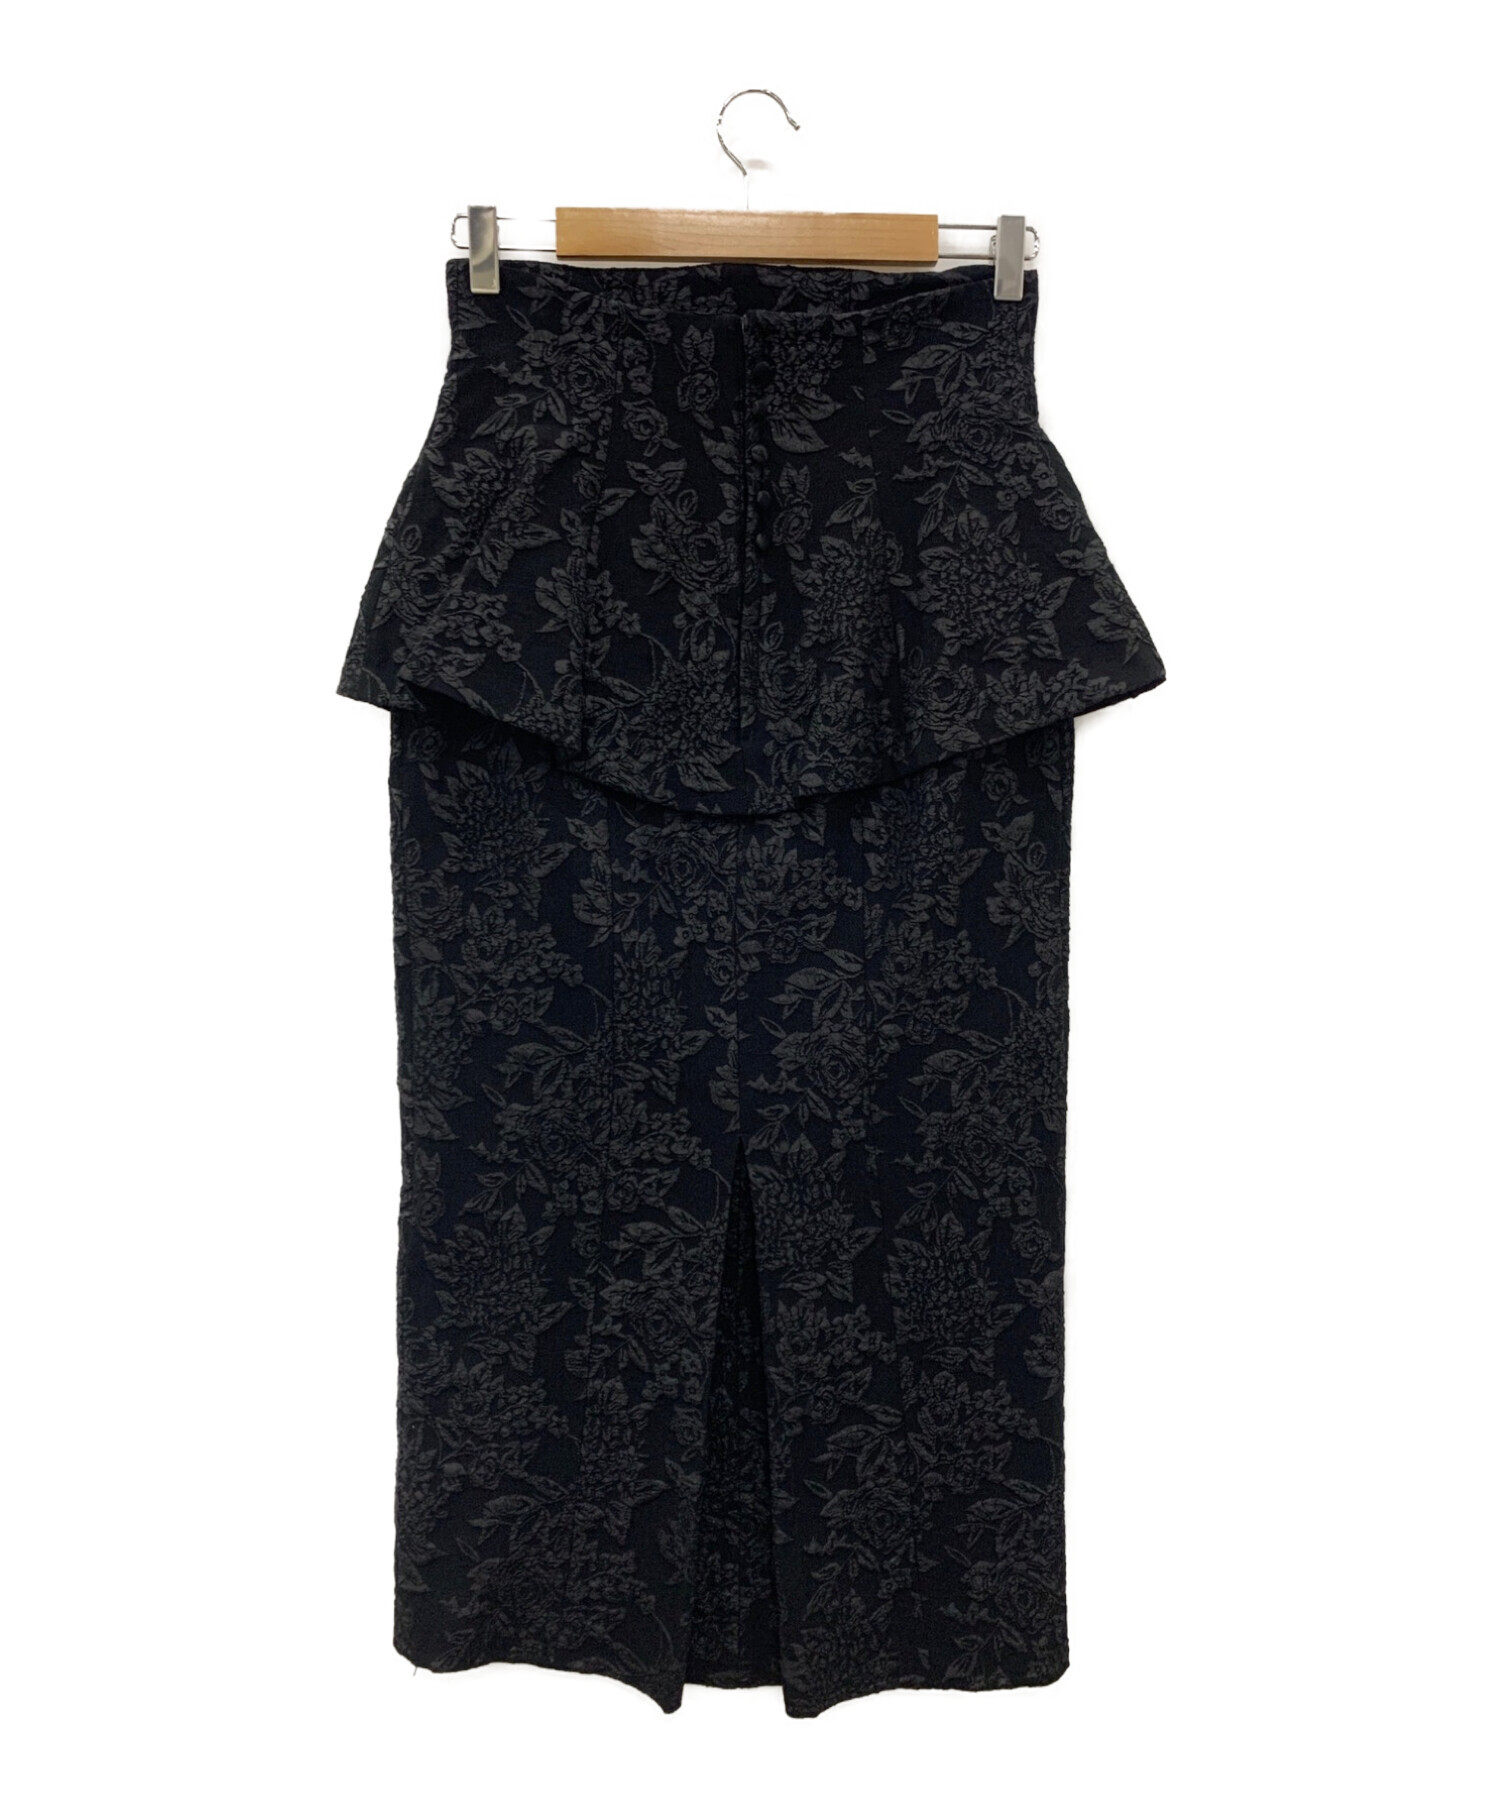 HER LIP TO (ハーリップトゥ) Floral Jacquard Peplum Skirt ブラック サイズ:M